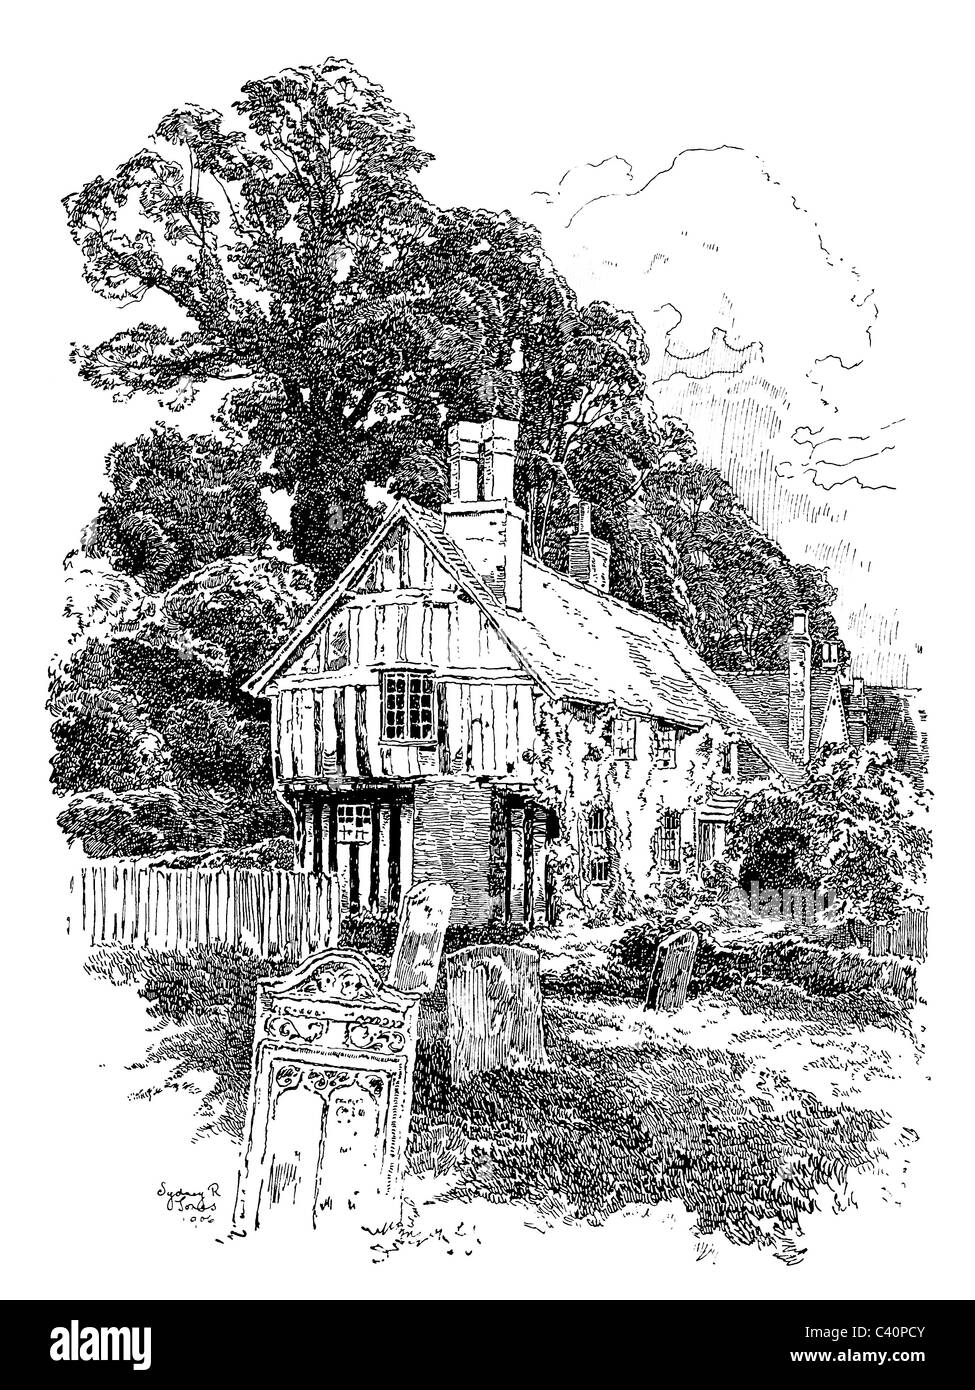 Alveston, Warwickshire - Penna e inchiostro illustrazione da 'Old English Country Cottages' di Charles Holme, 1906. Foto Stock